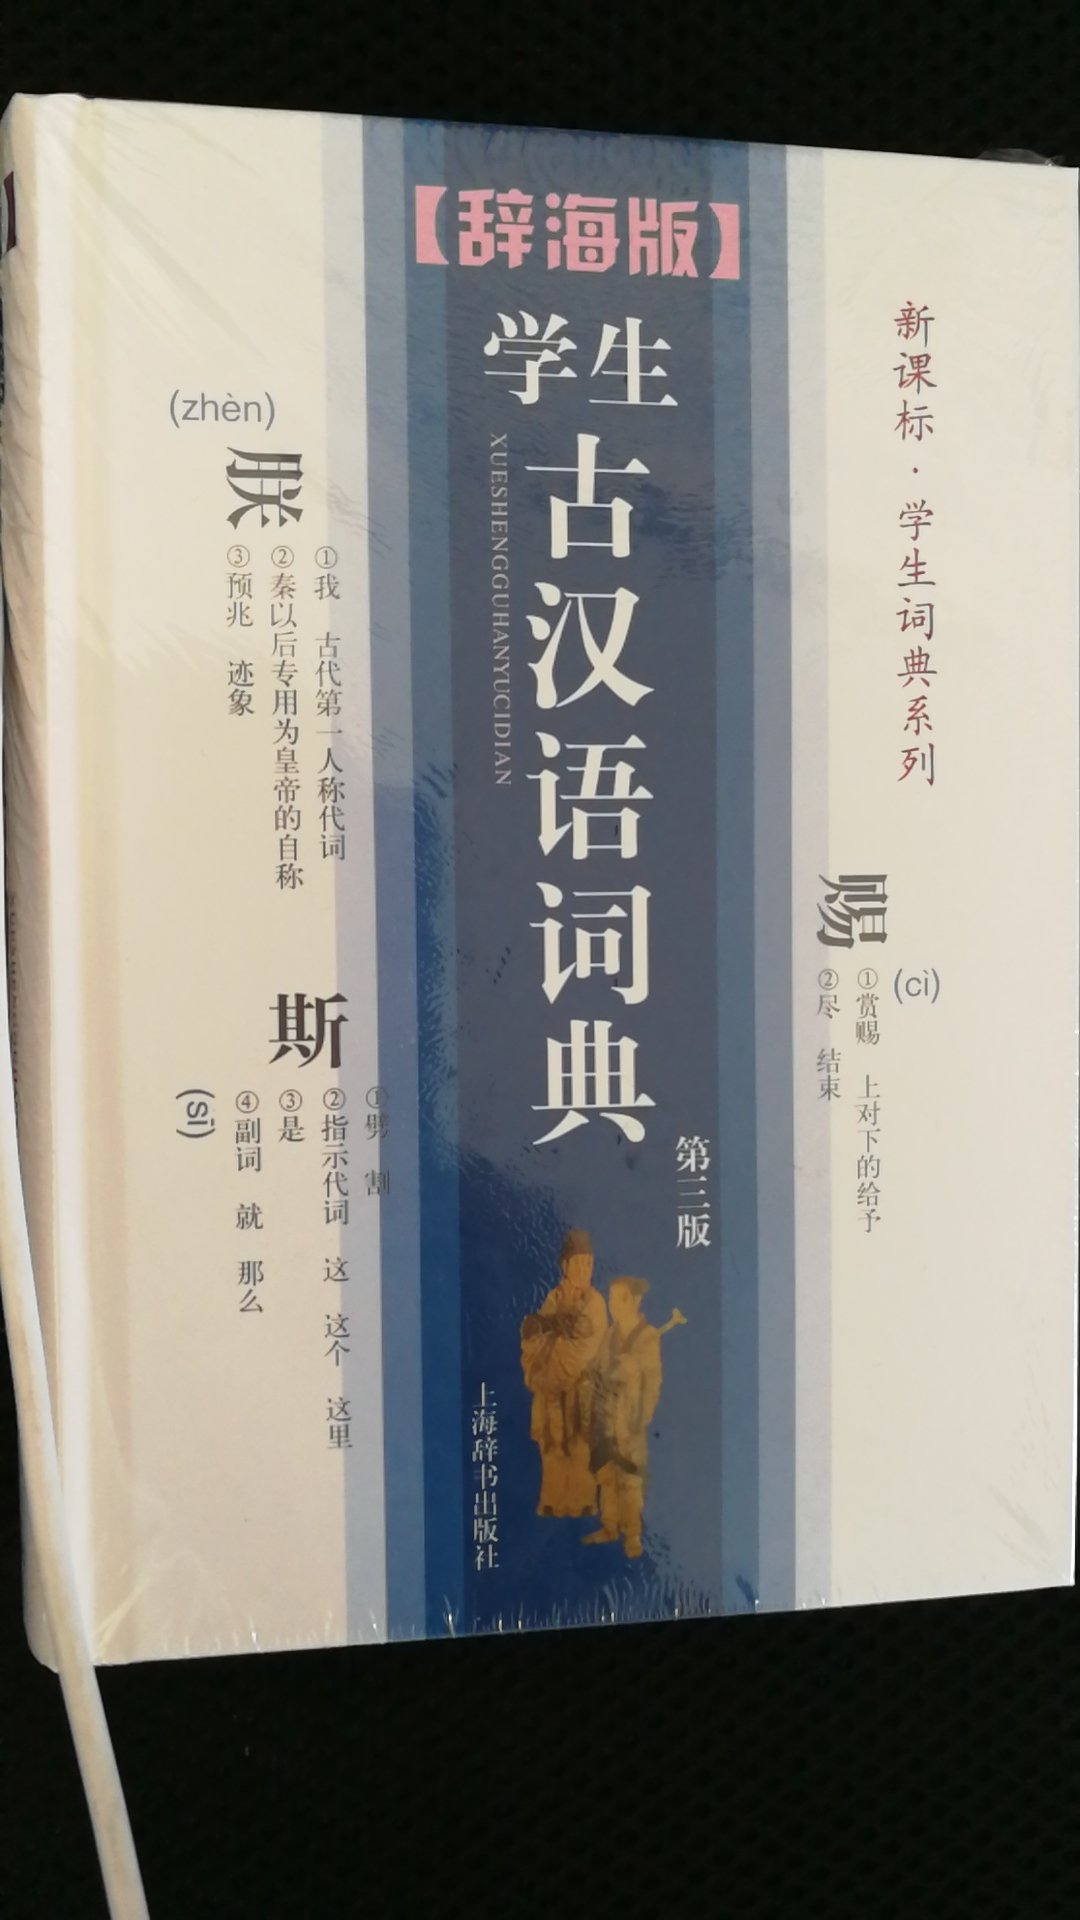 非常实用的一部，学生古汉语工具书。